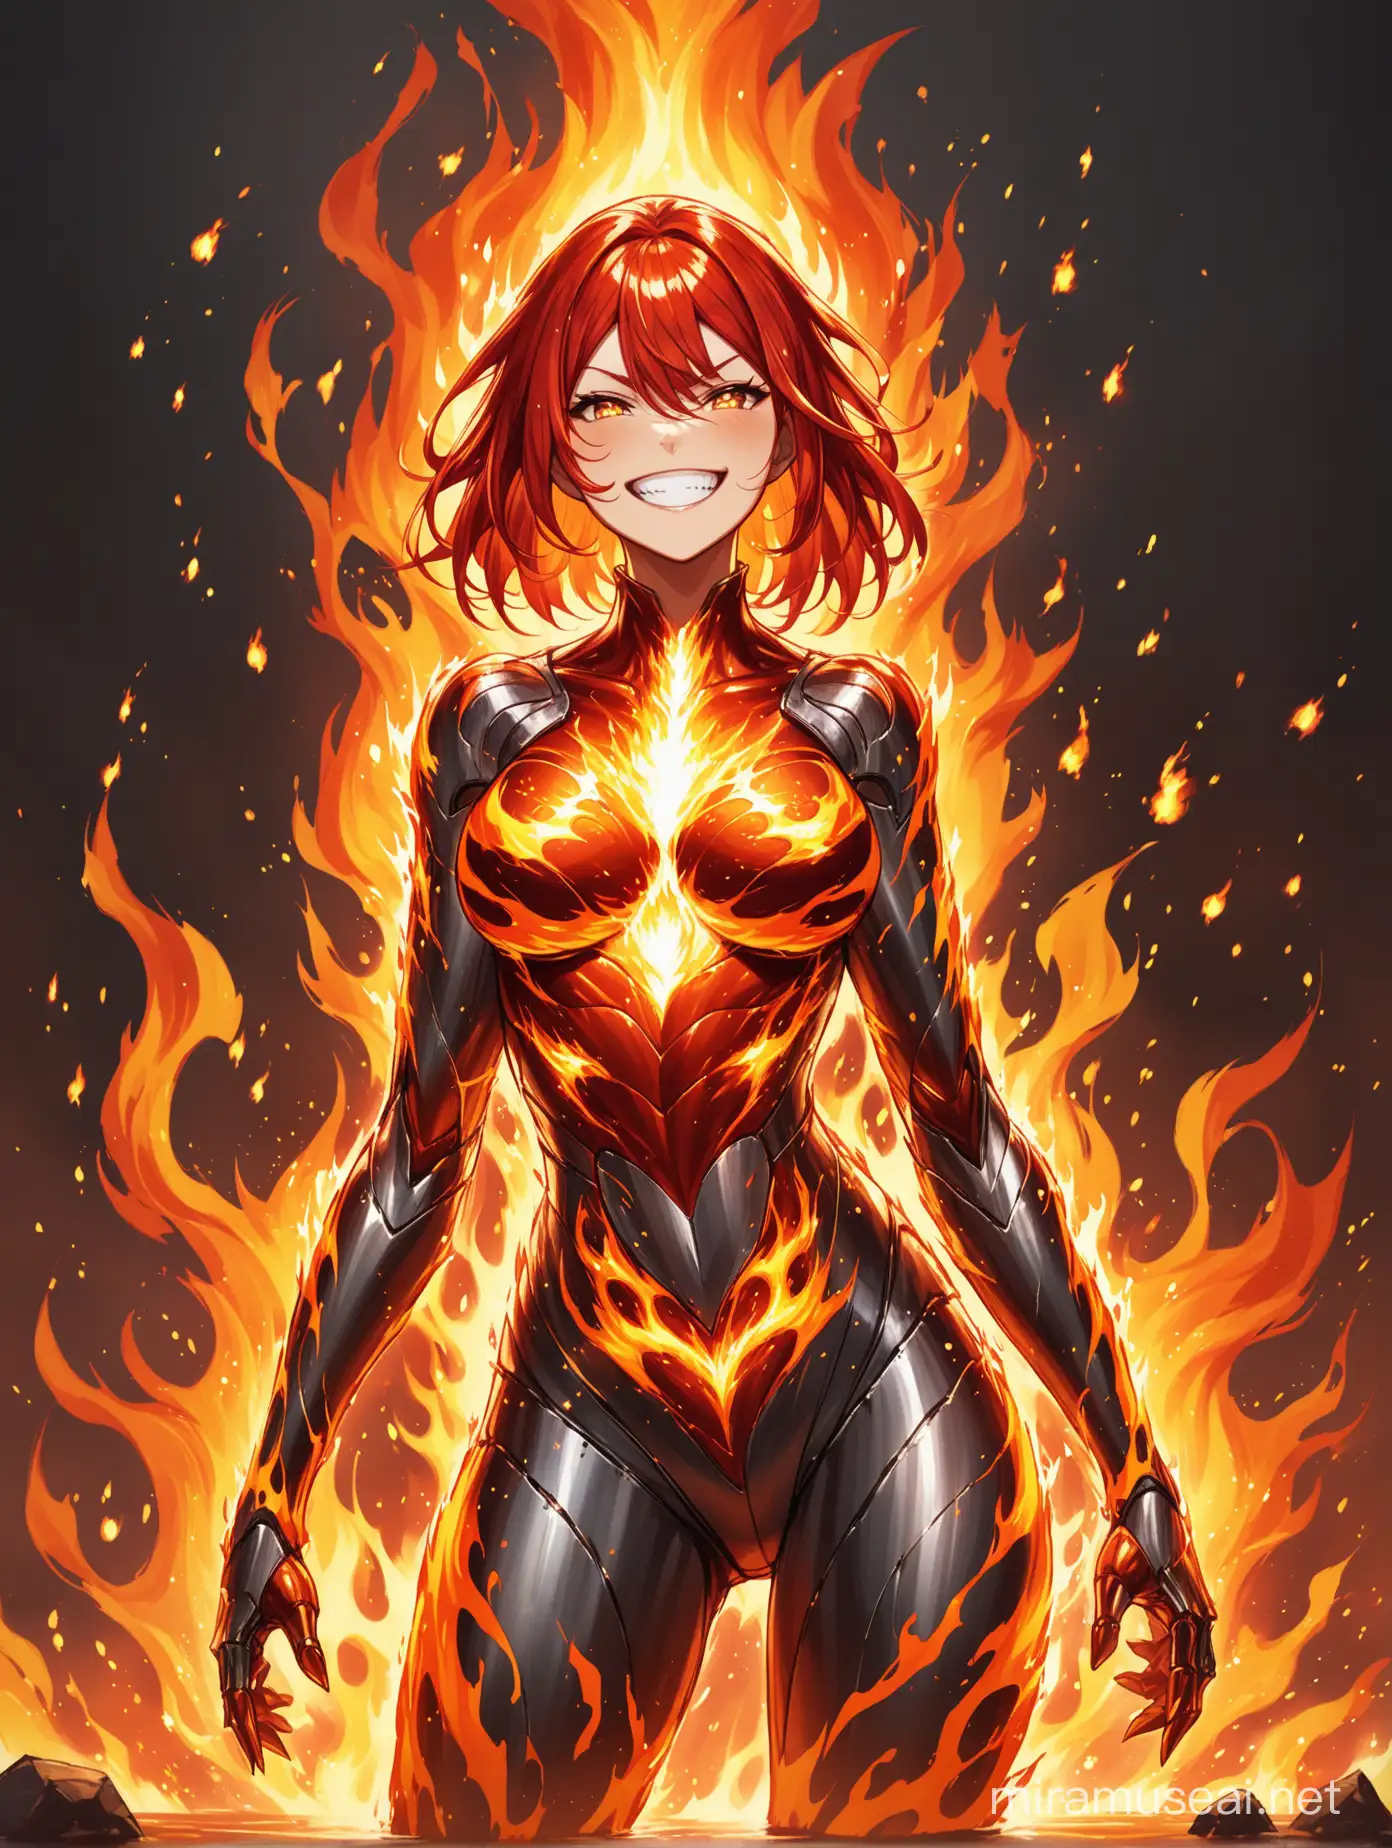 Fire elemental girl, metal body, fire splashes, grin